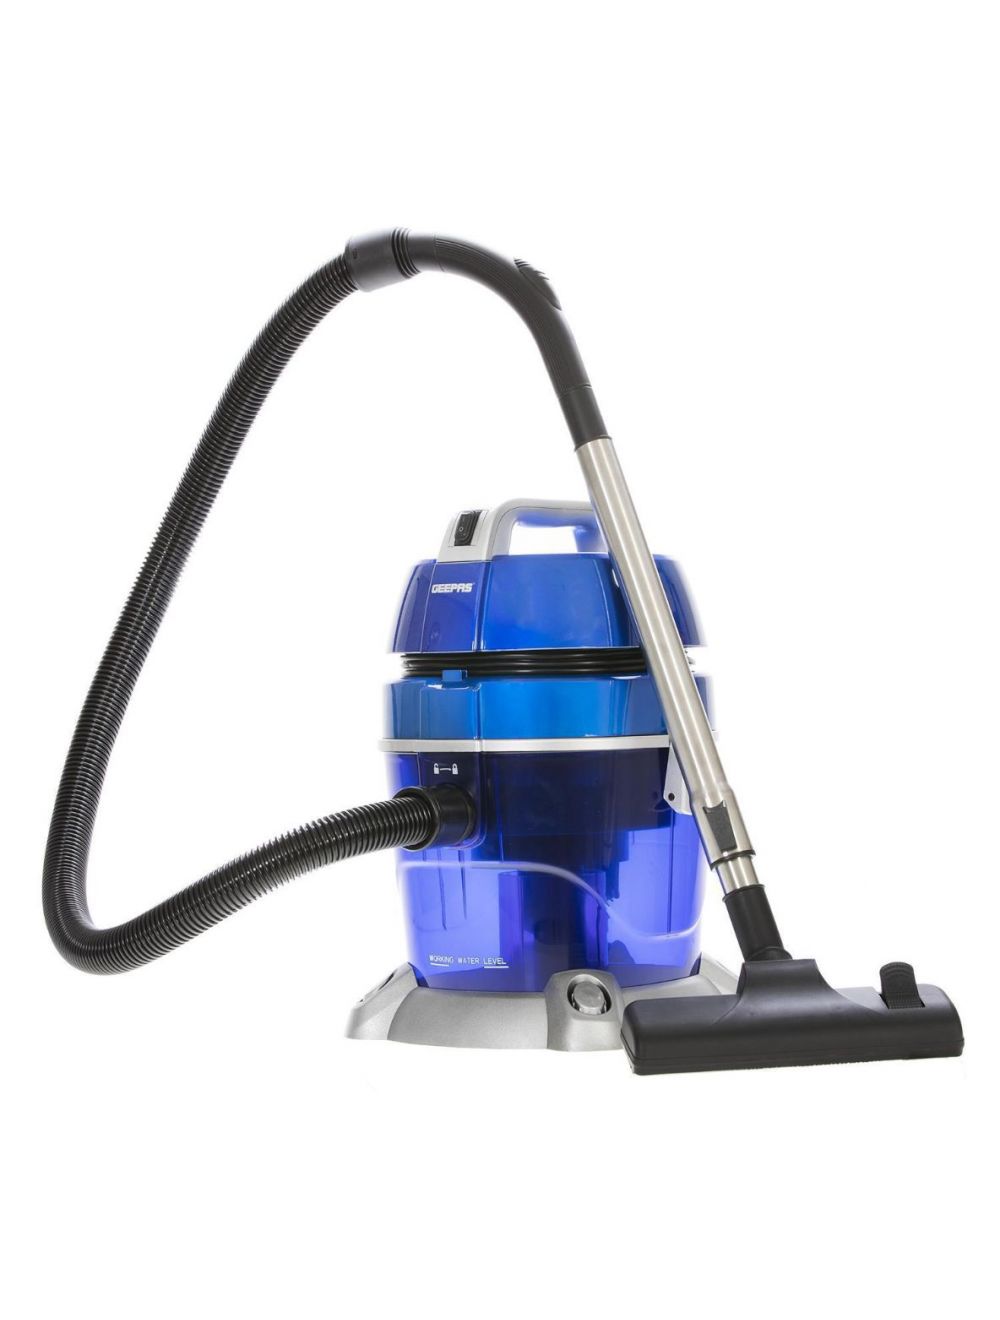 Geepas 3-In-1 Vacuum Cleaner 1200W GVC19016UK Blue